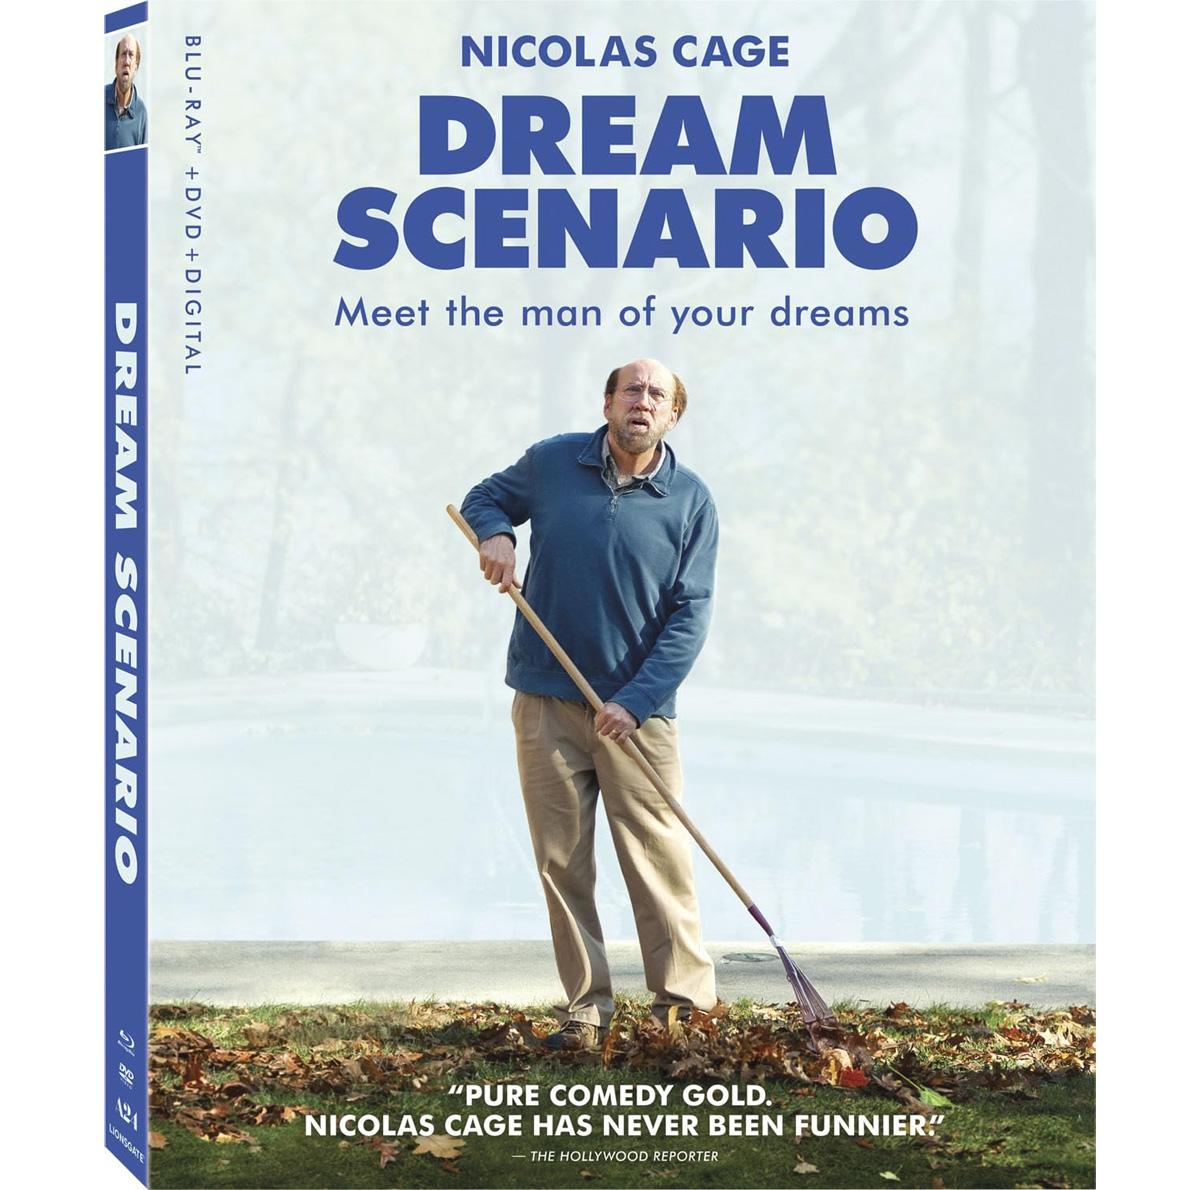 Dream Scenario Blu-ray for $7.50